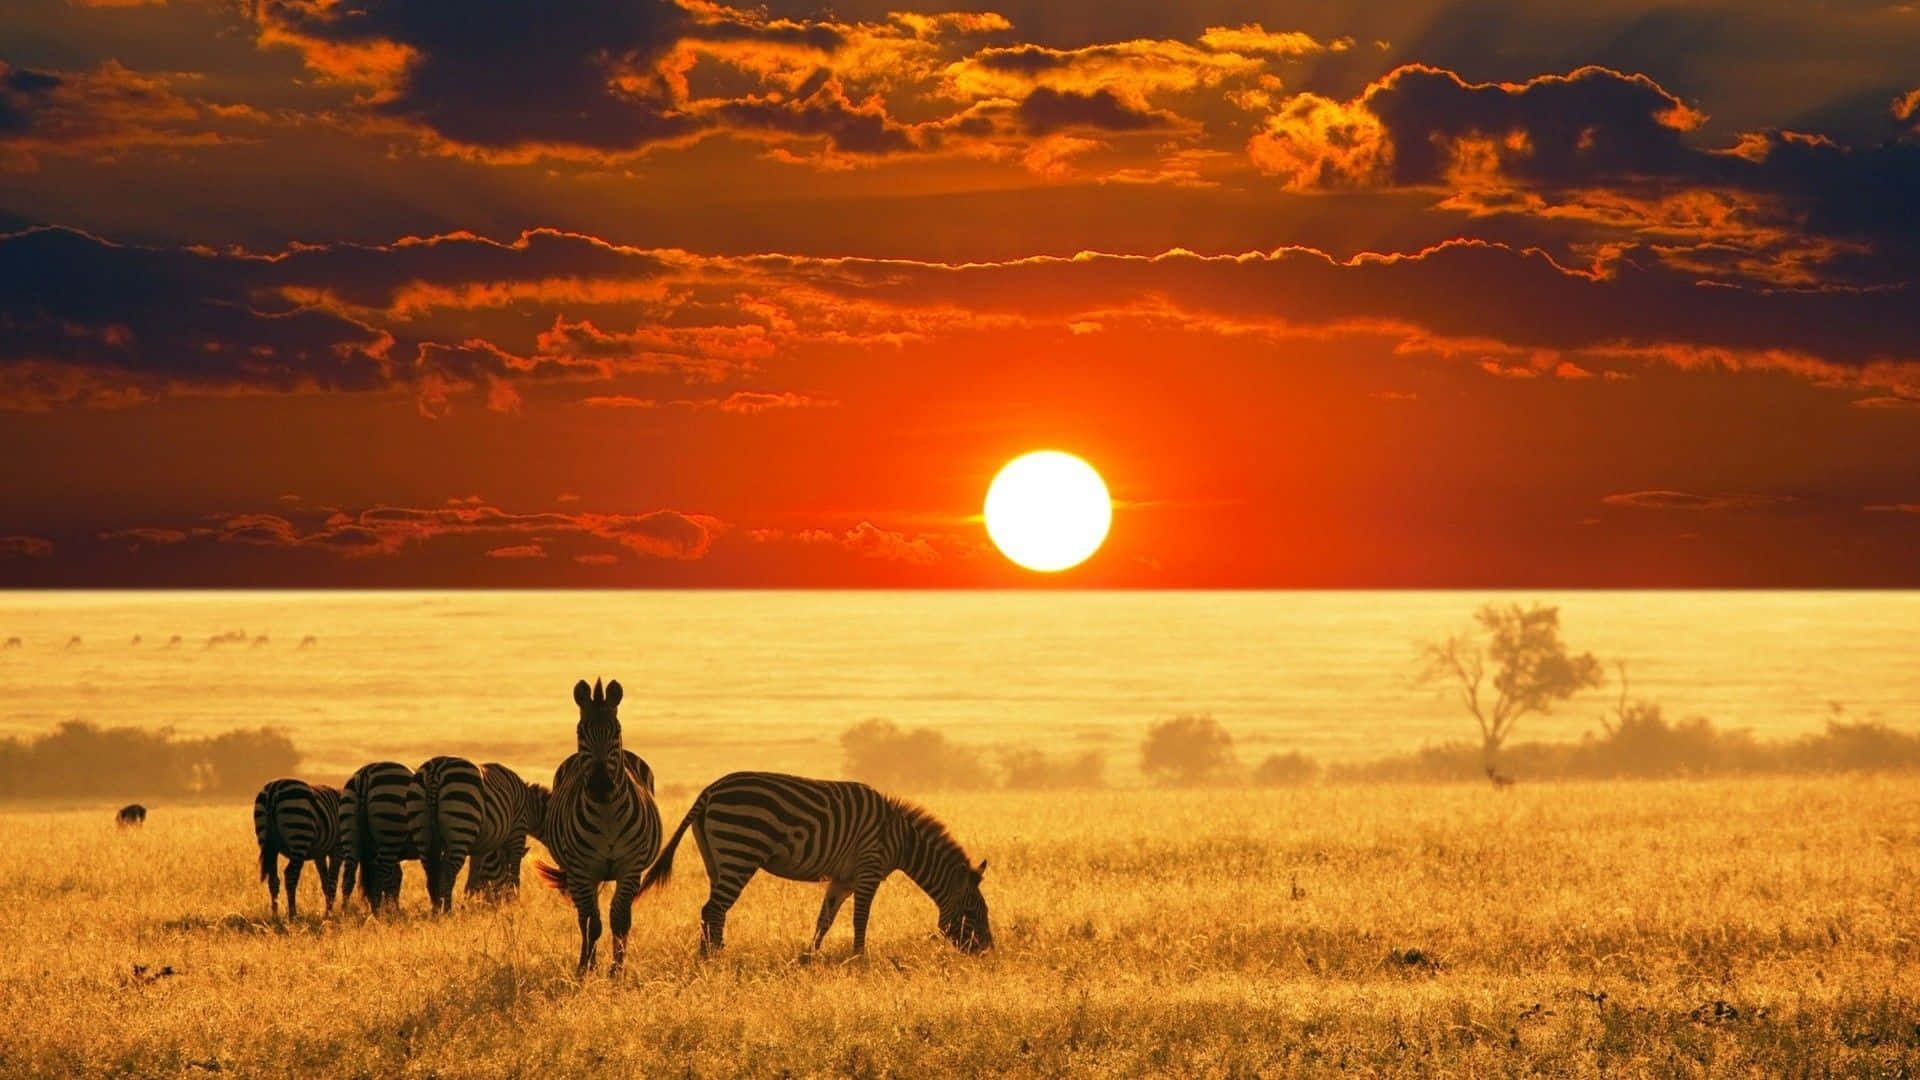 Zebrasgegen Sonnenuntergang Auf Safari Hintergrund.